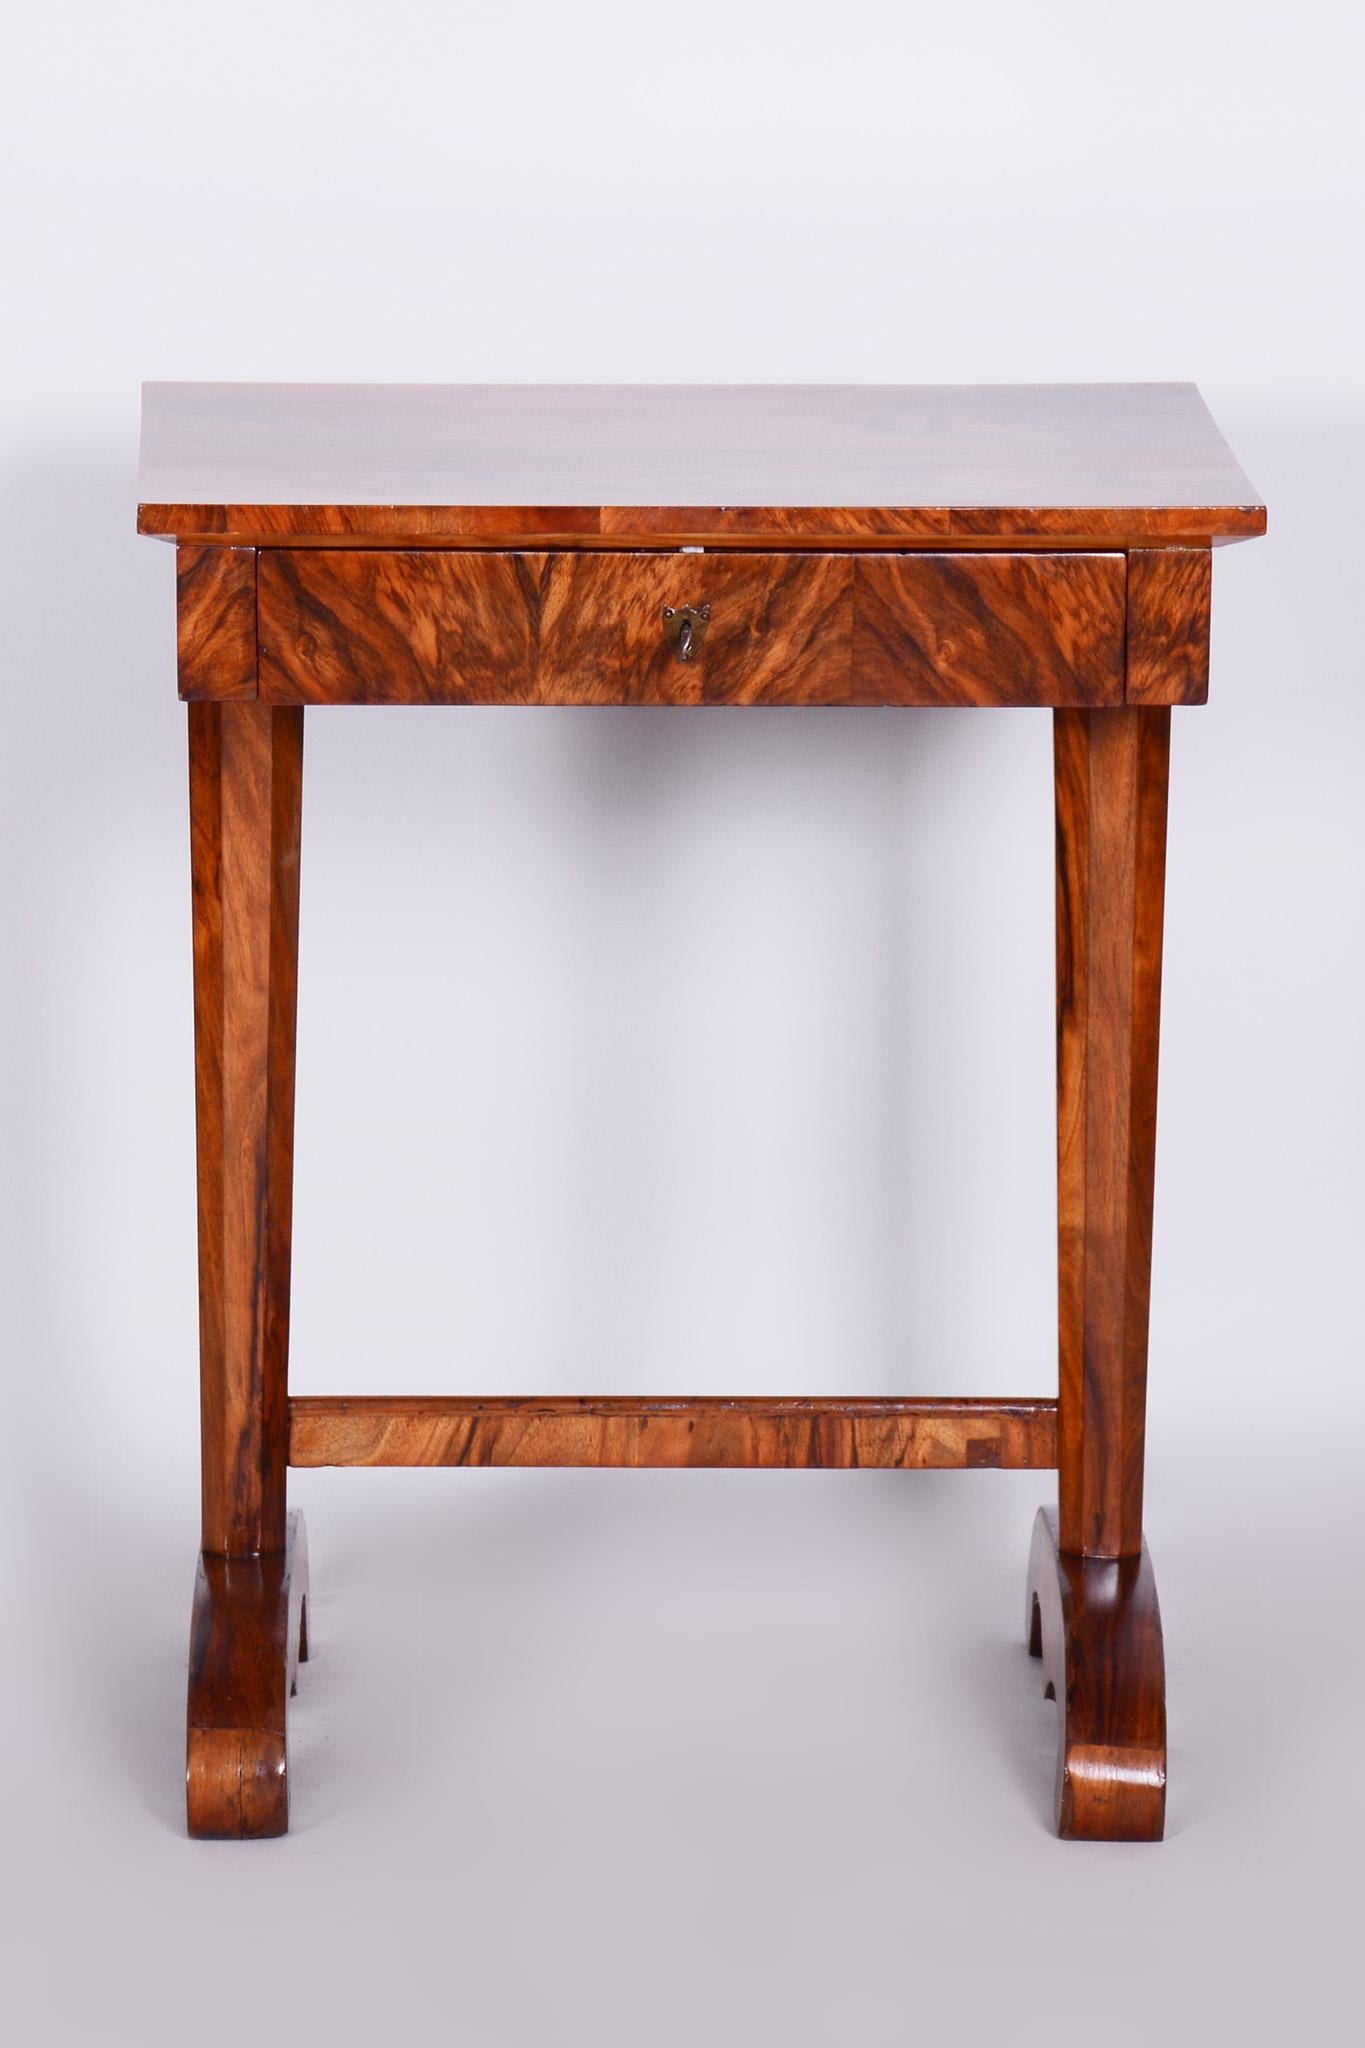 Petite table d'appoint Biedermeier. Restauré.

Source : Autriche
Période : 1820-1829
Matériau : Noyer

Ravive le vernis original.